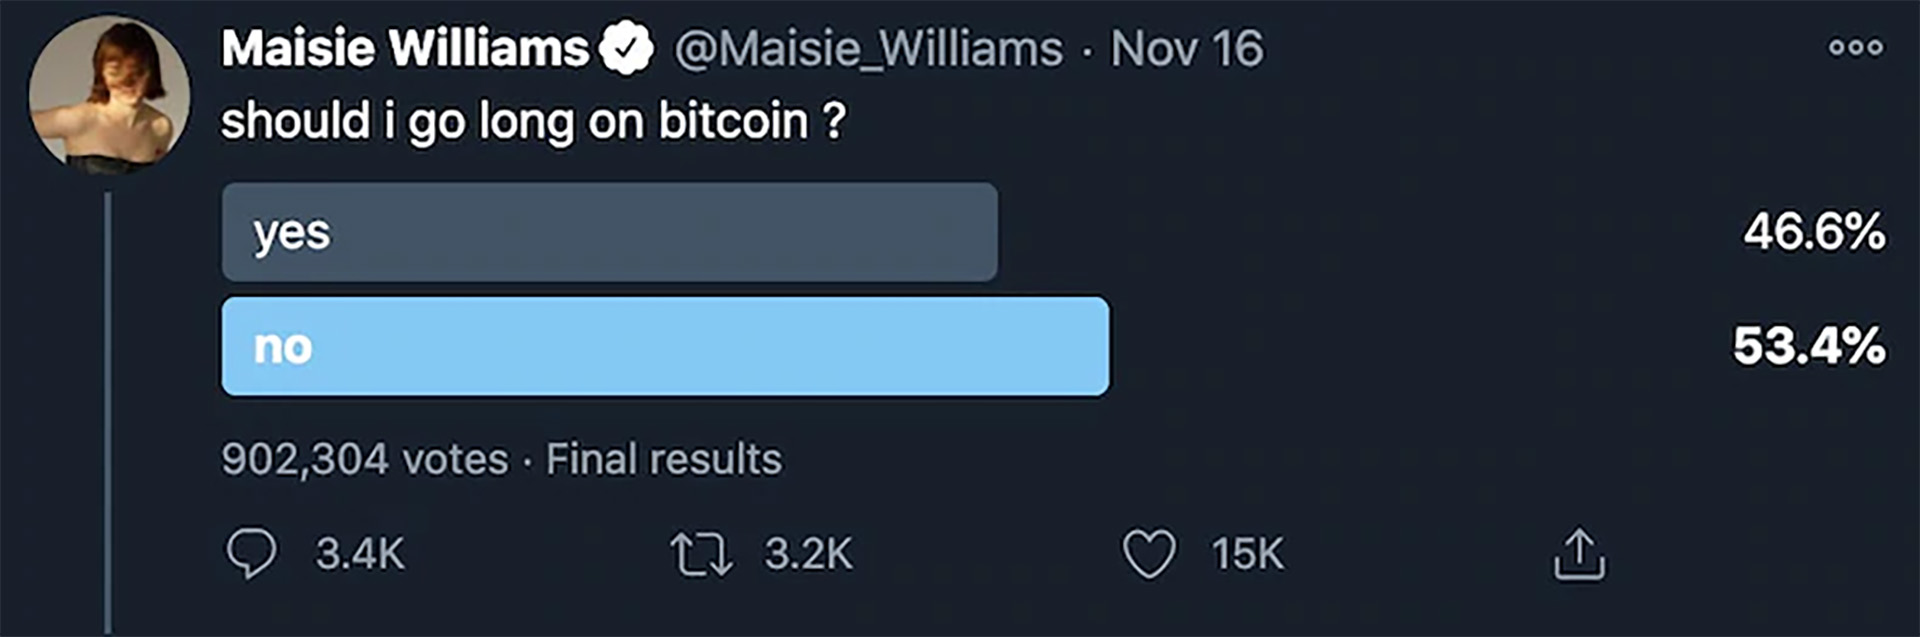 El tweet de Maisie Williams sobre Bitcoin